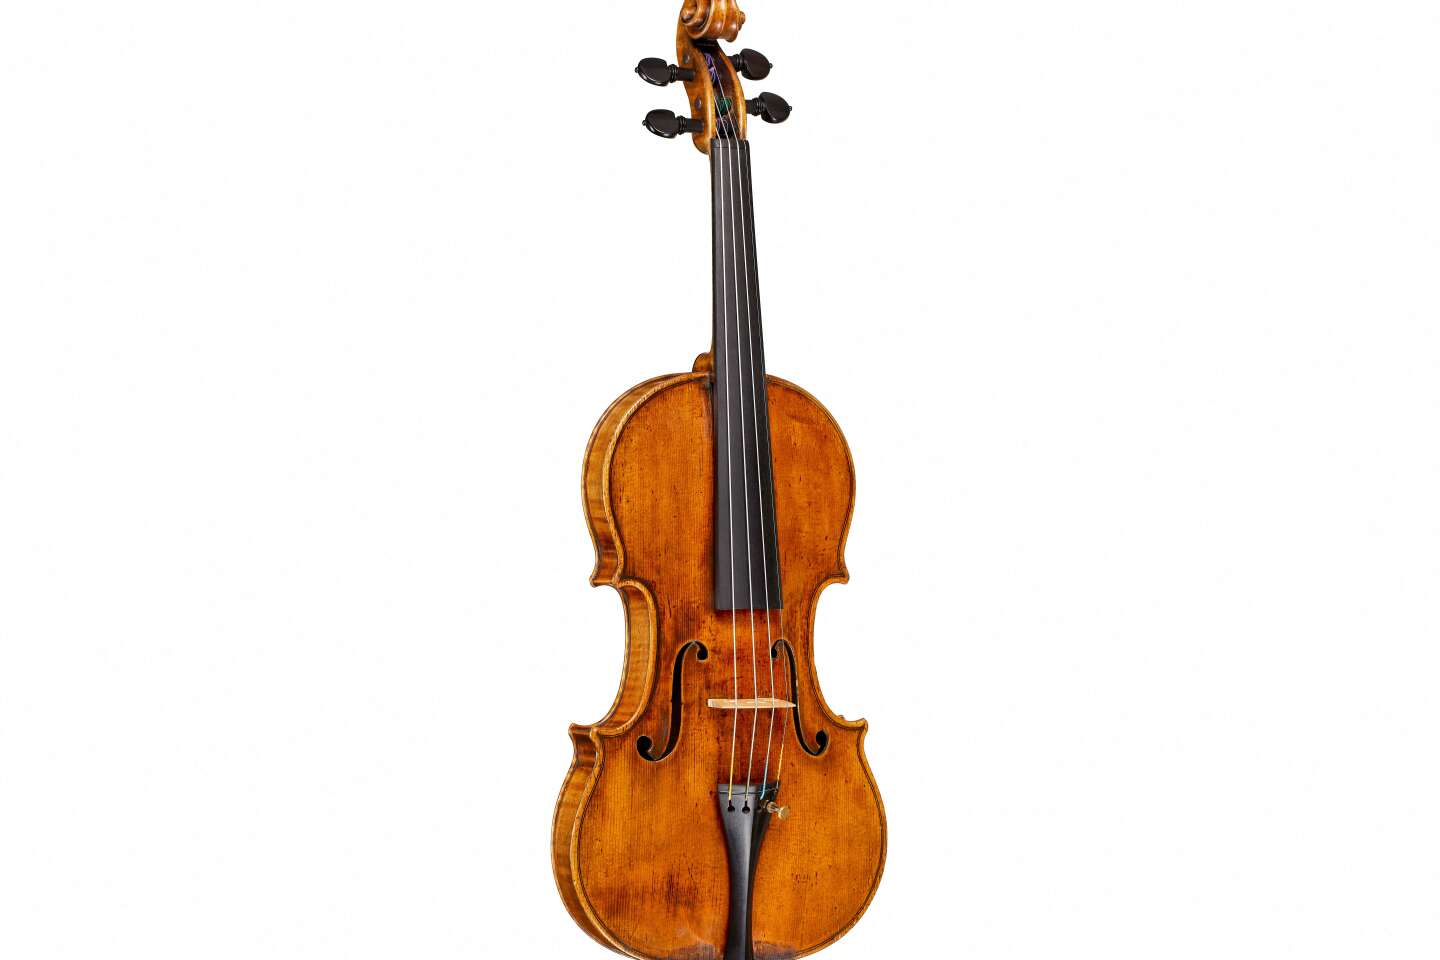 Sebuah biola Stradivarius terjual di lelang dengan harga lebih dari $15 juta, jumlah yang mendekati rekor